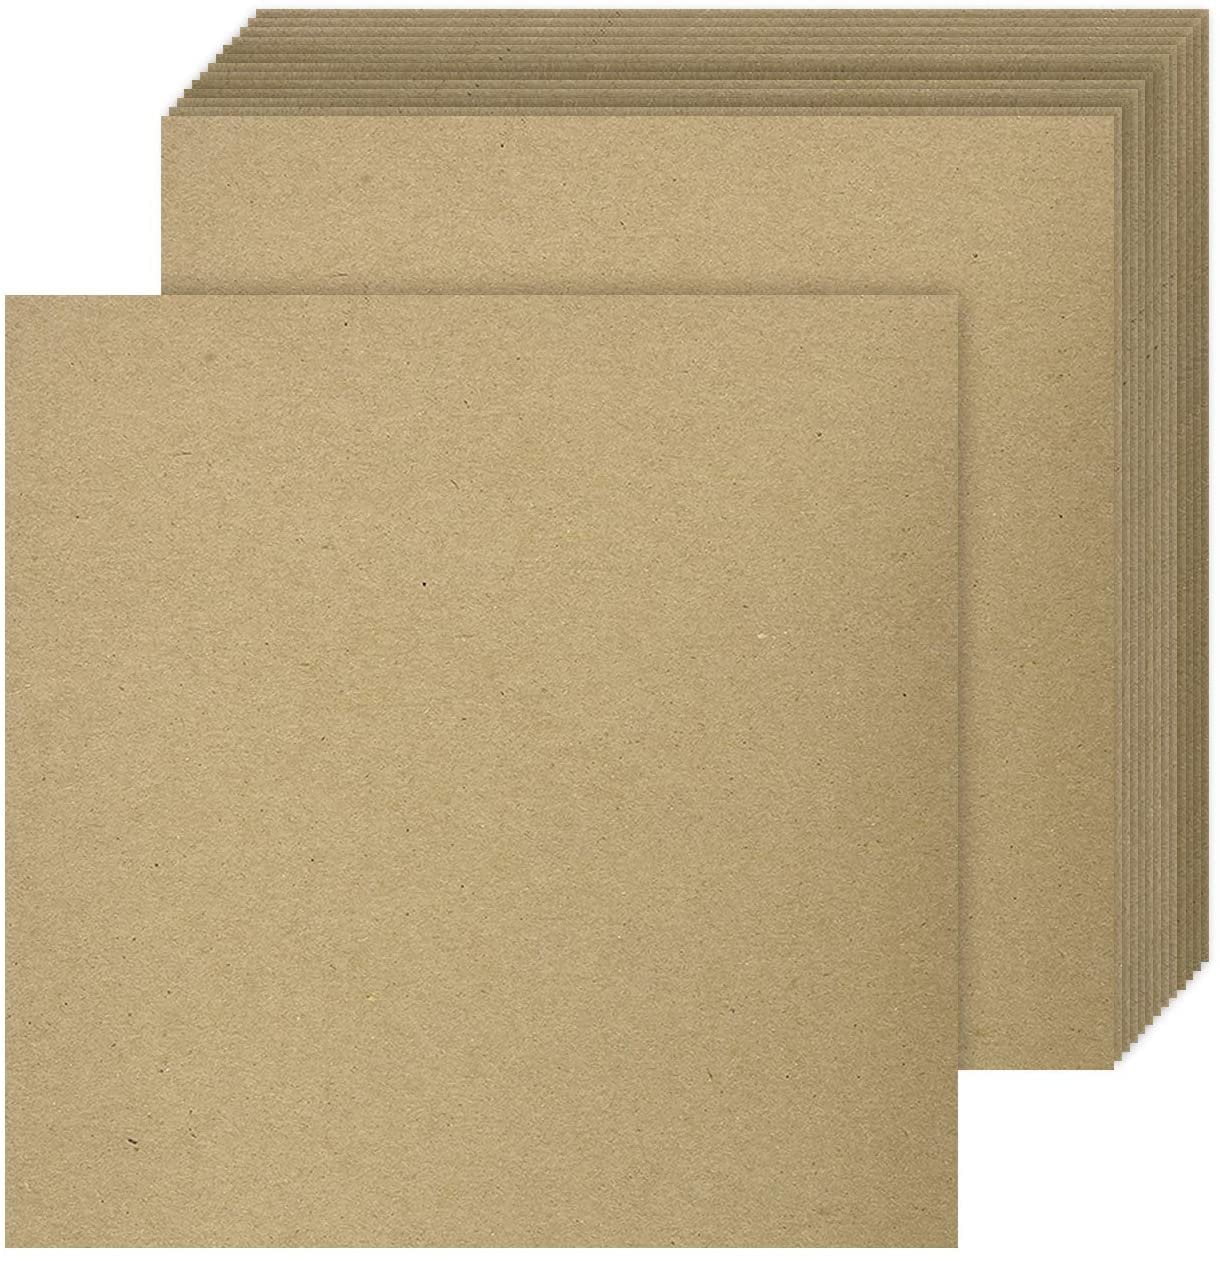 50 Pieces 30pt 8 x 10 Brown Kraft Cardboard Chipboard 